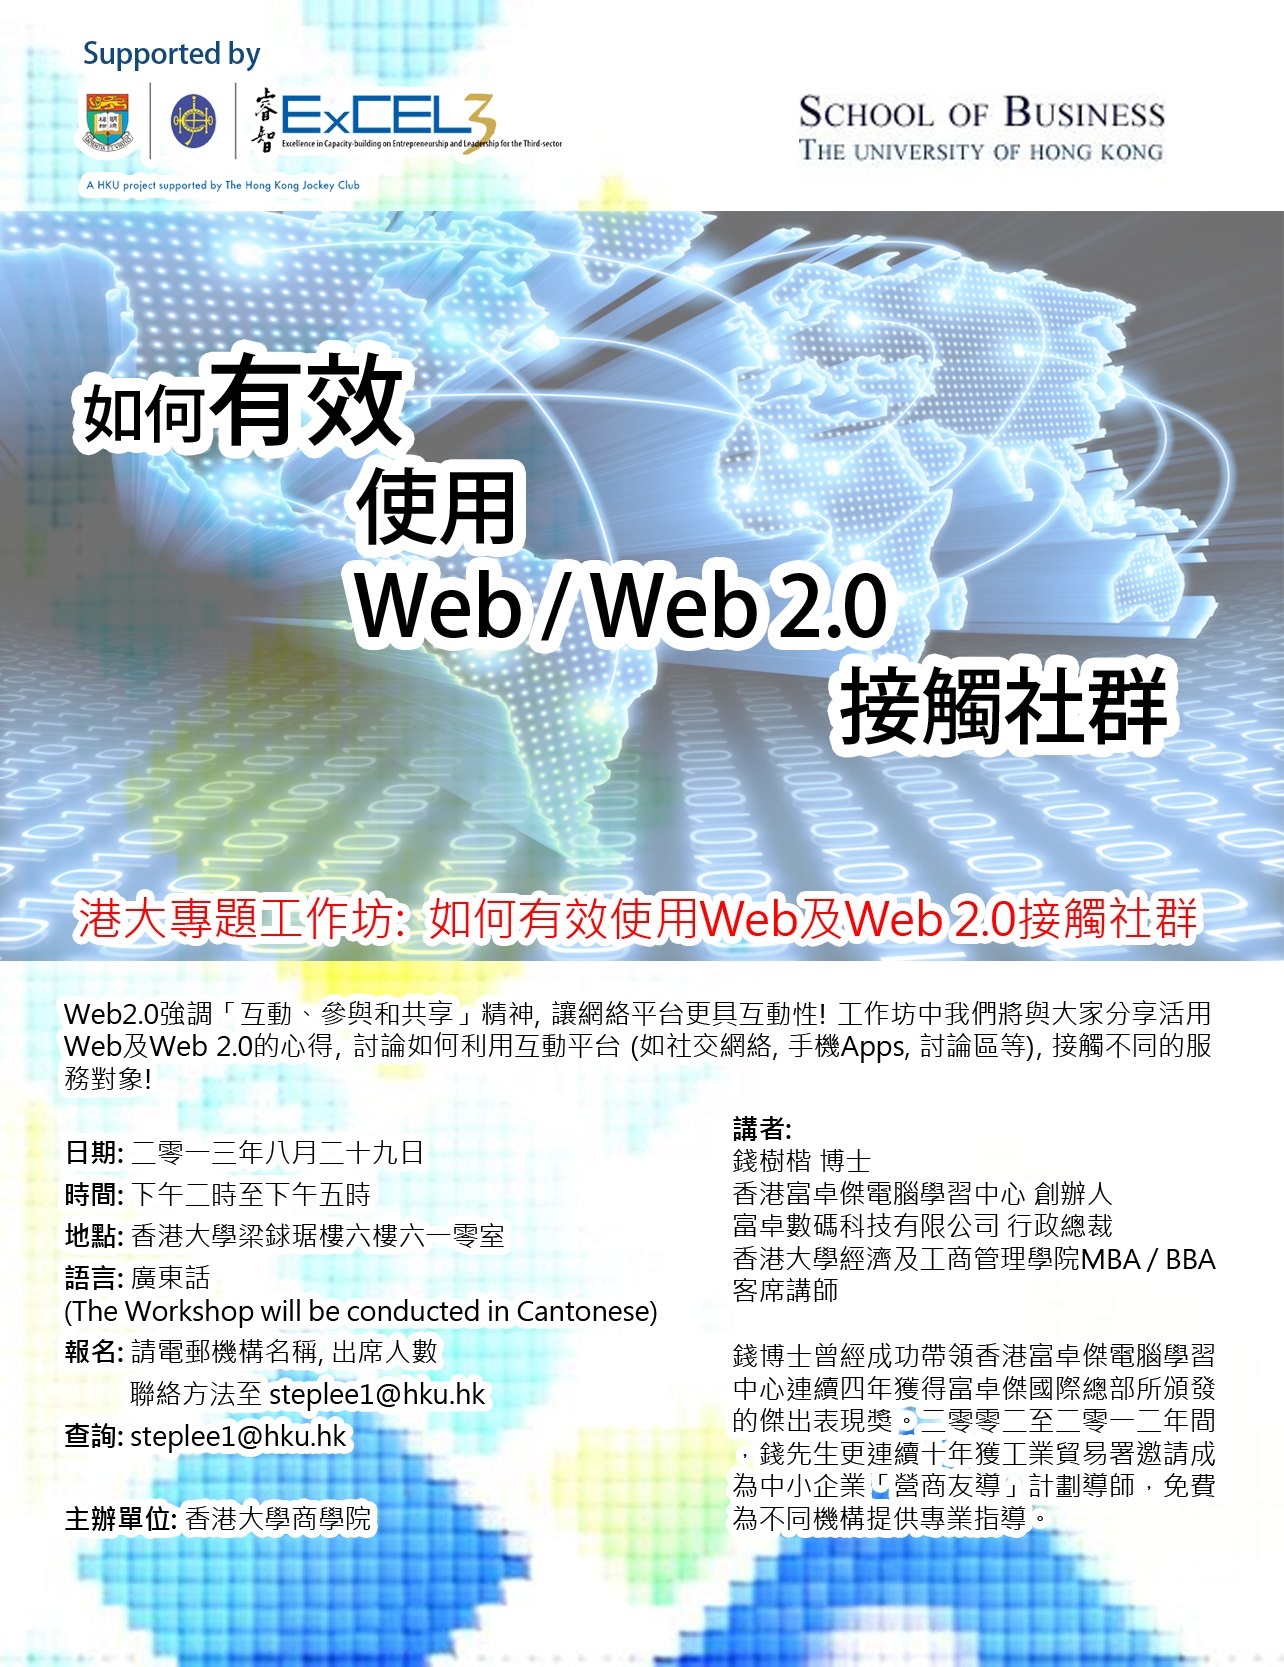 Workshop on Web2.0